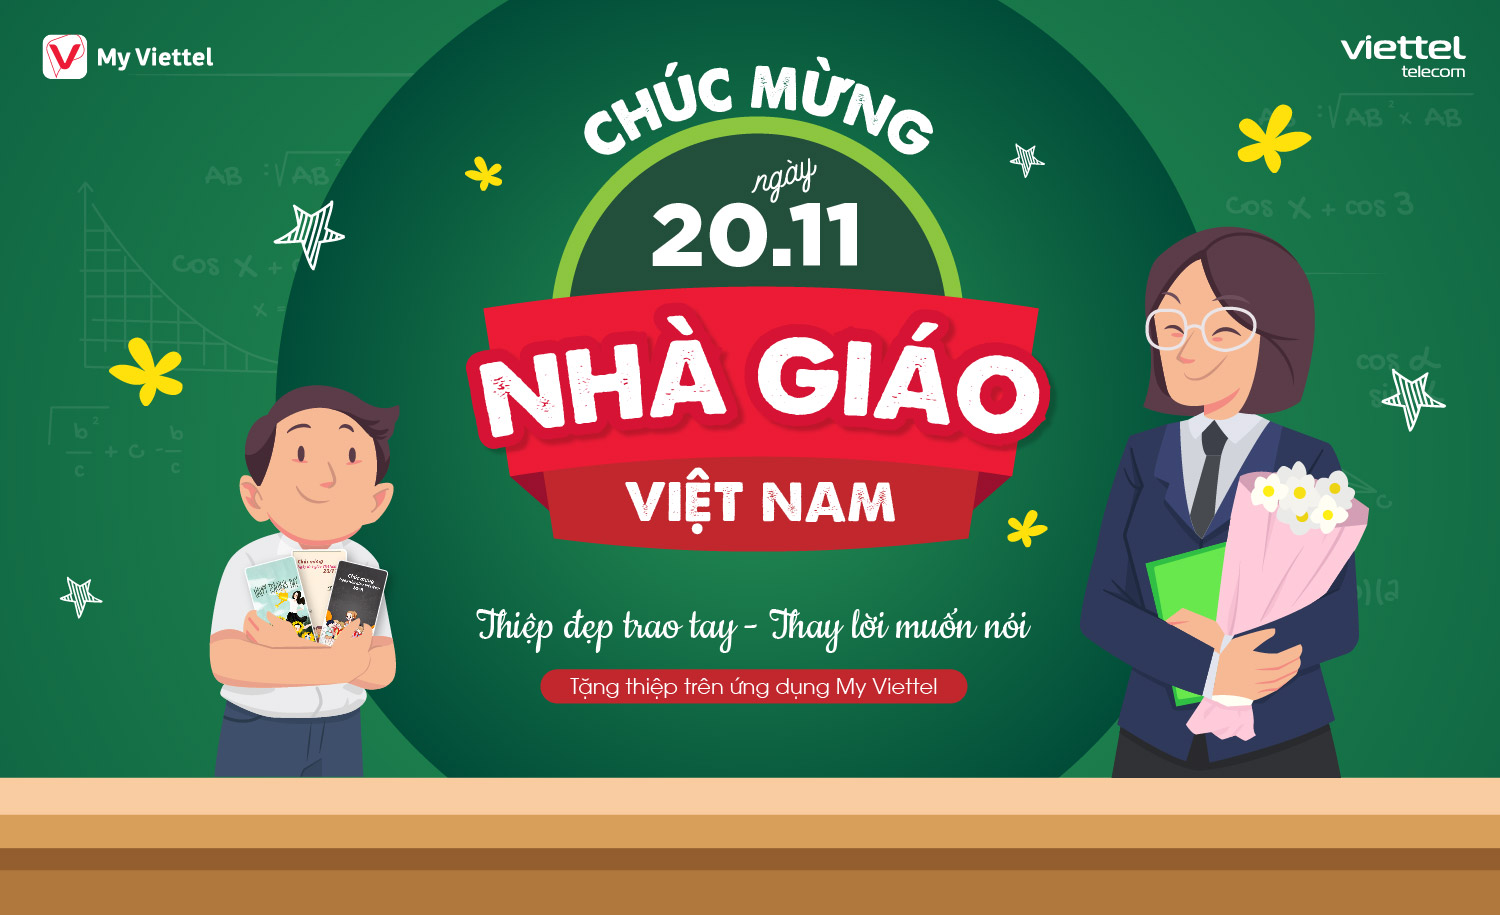 Chúc mừng ngày Nhà giáo Việt Nam 20/11: Thiệp đẹp trao tay thay lời muốn nói 